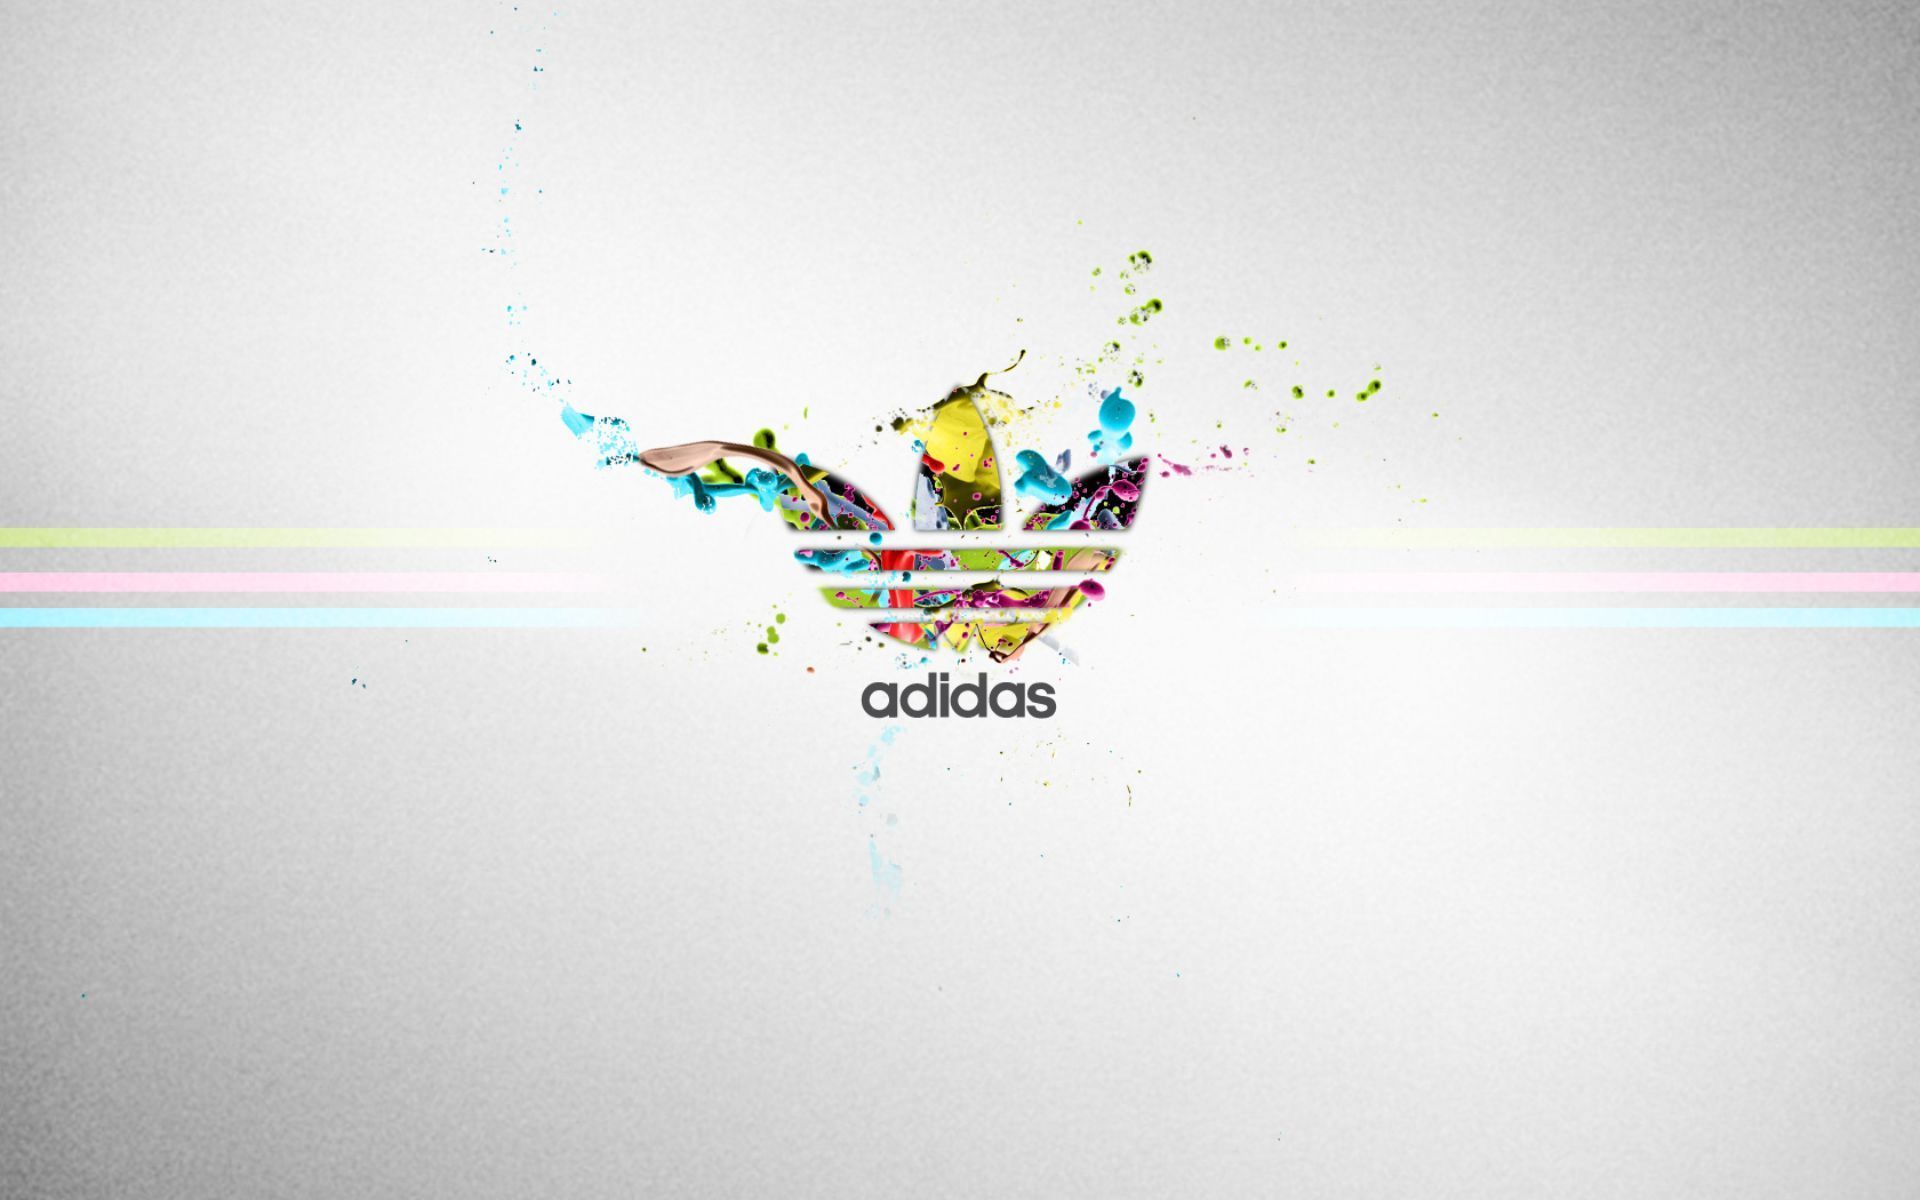 текстуры логотип adidas без смс